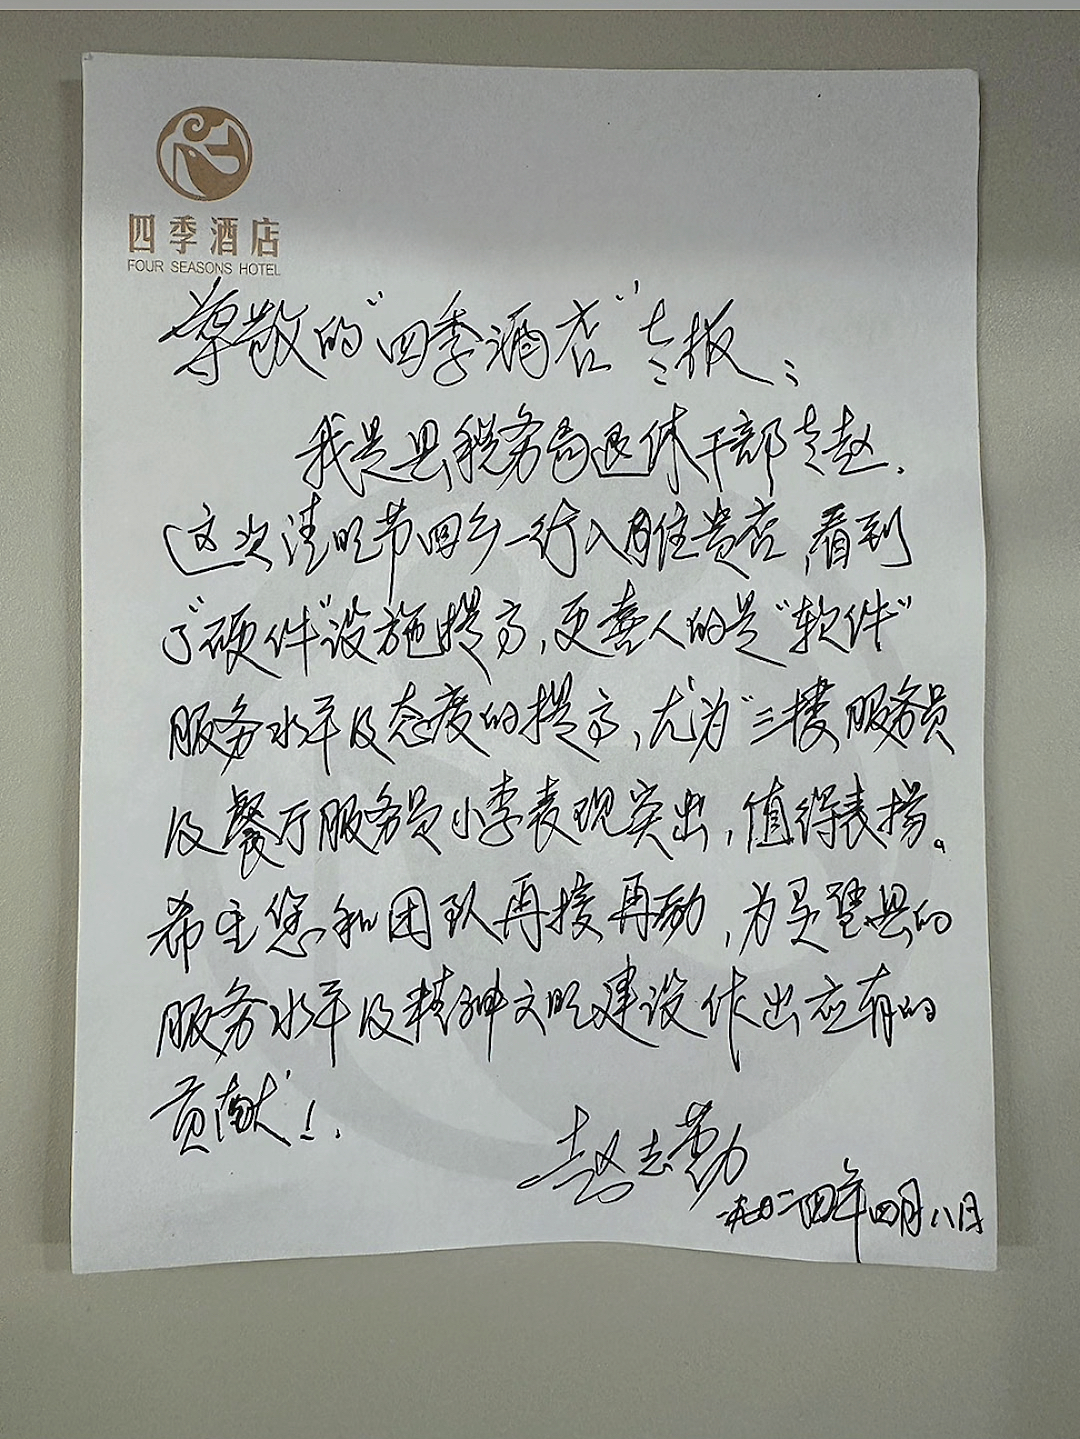 暖心时刻｜灵璧四季酒店收到客人的手写表扬信